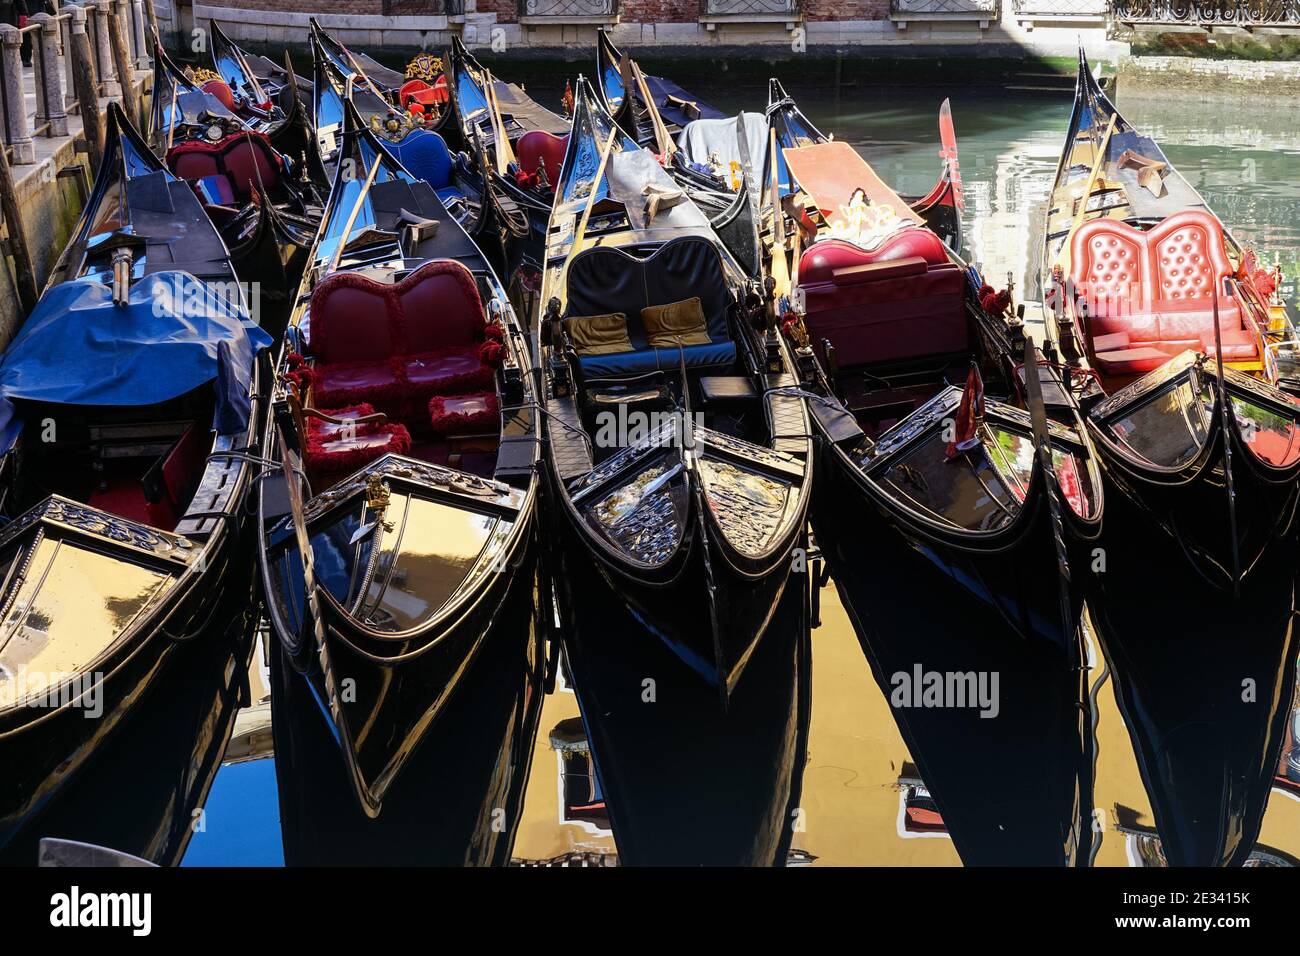 Gondole vénitienne traditionnelle, gondoles vénitiennes sur le canal de Venise, Italie Banque D'Images